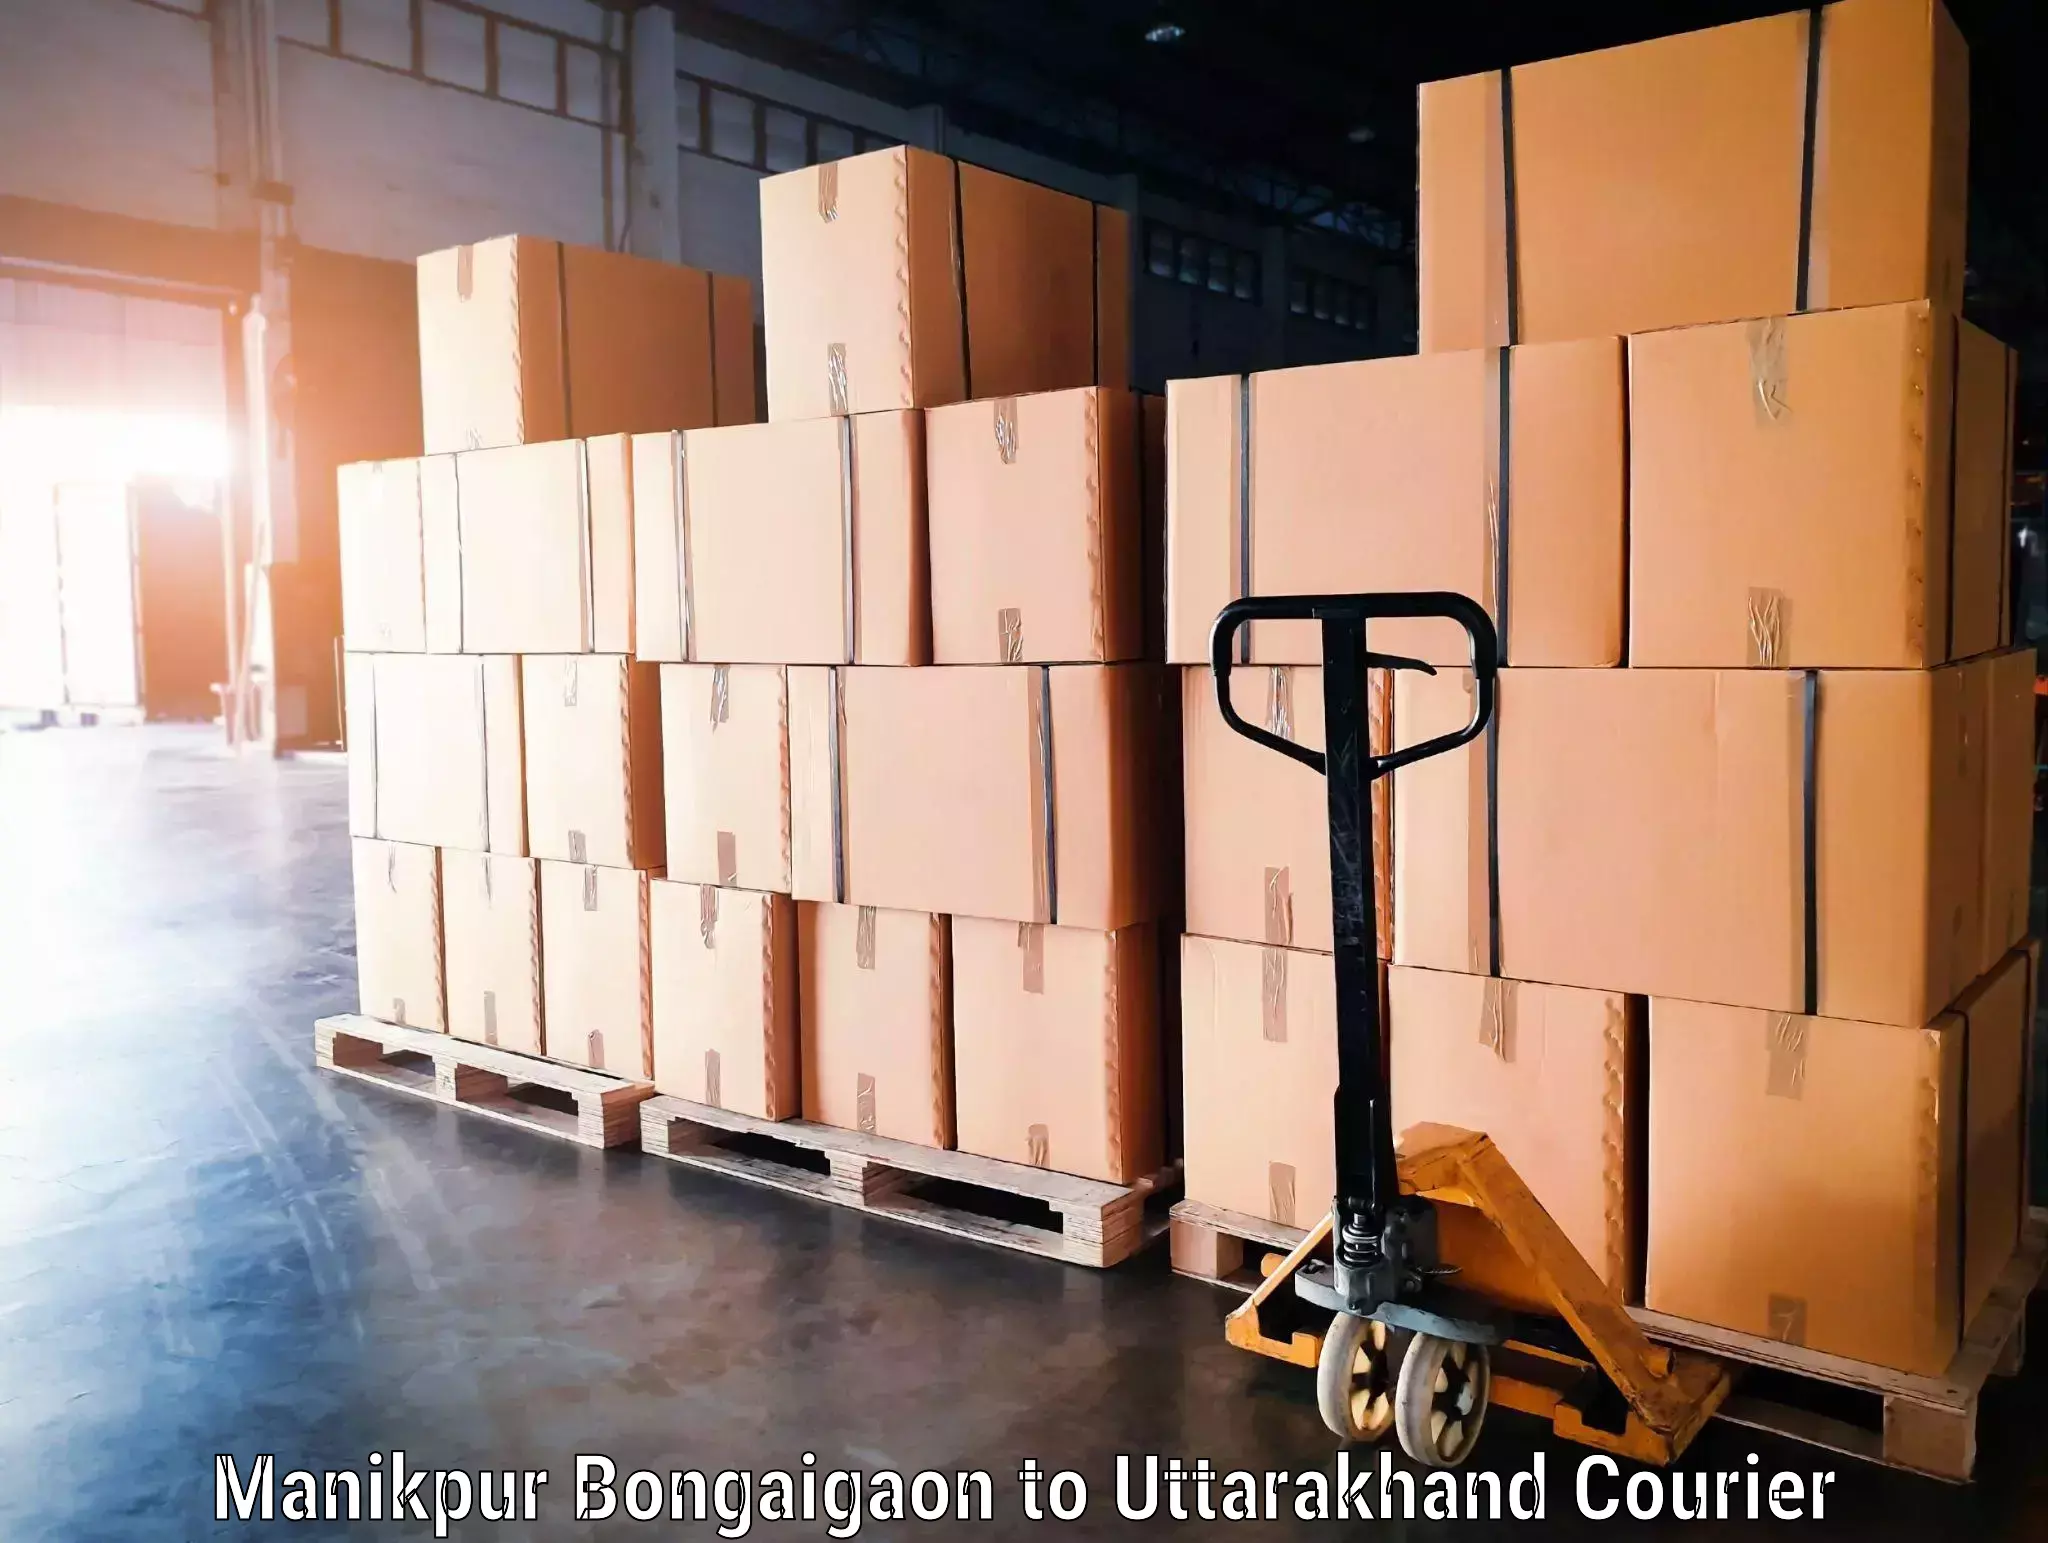 Luggage shipment specialists Manikpur Bongaigaon to Uttarakhand